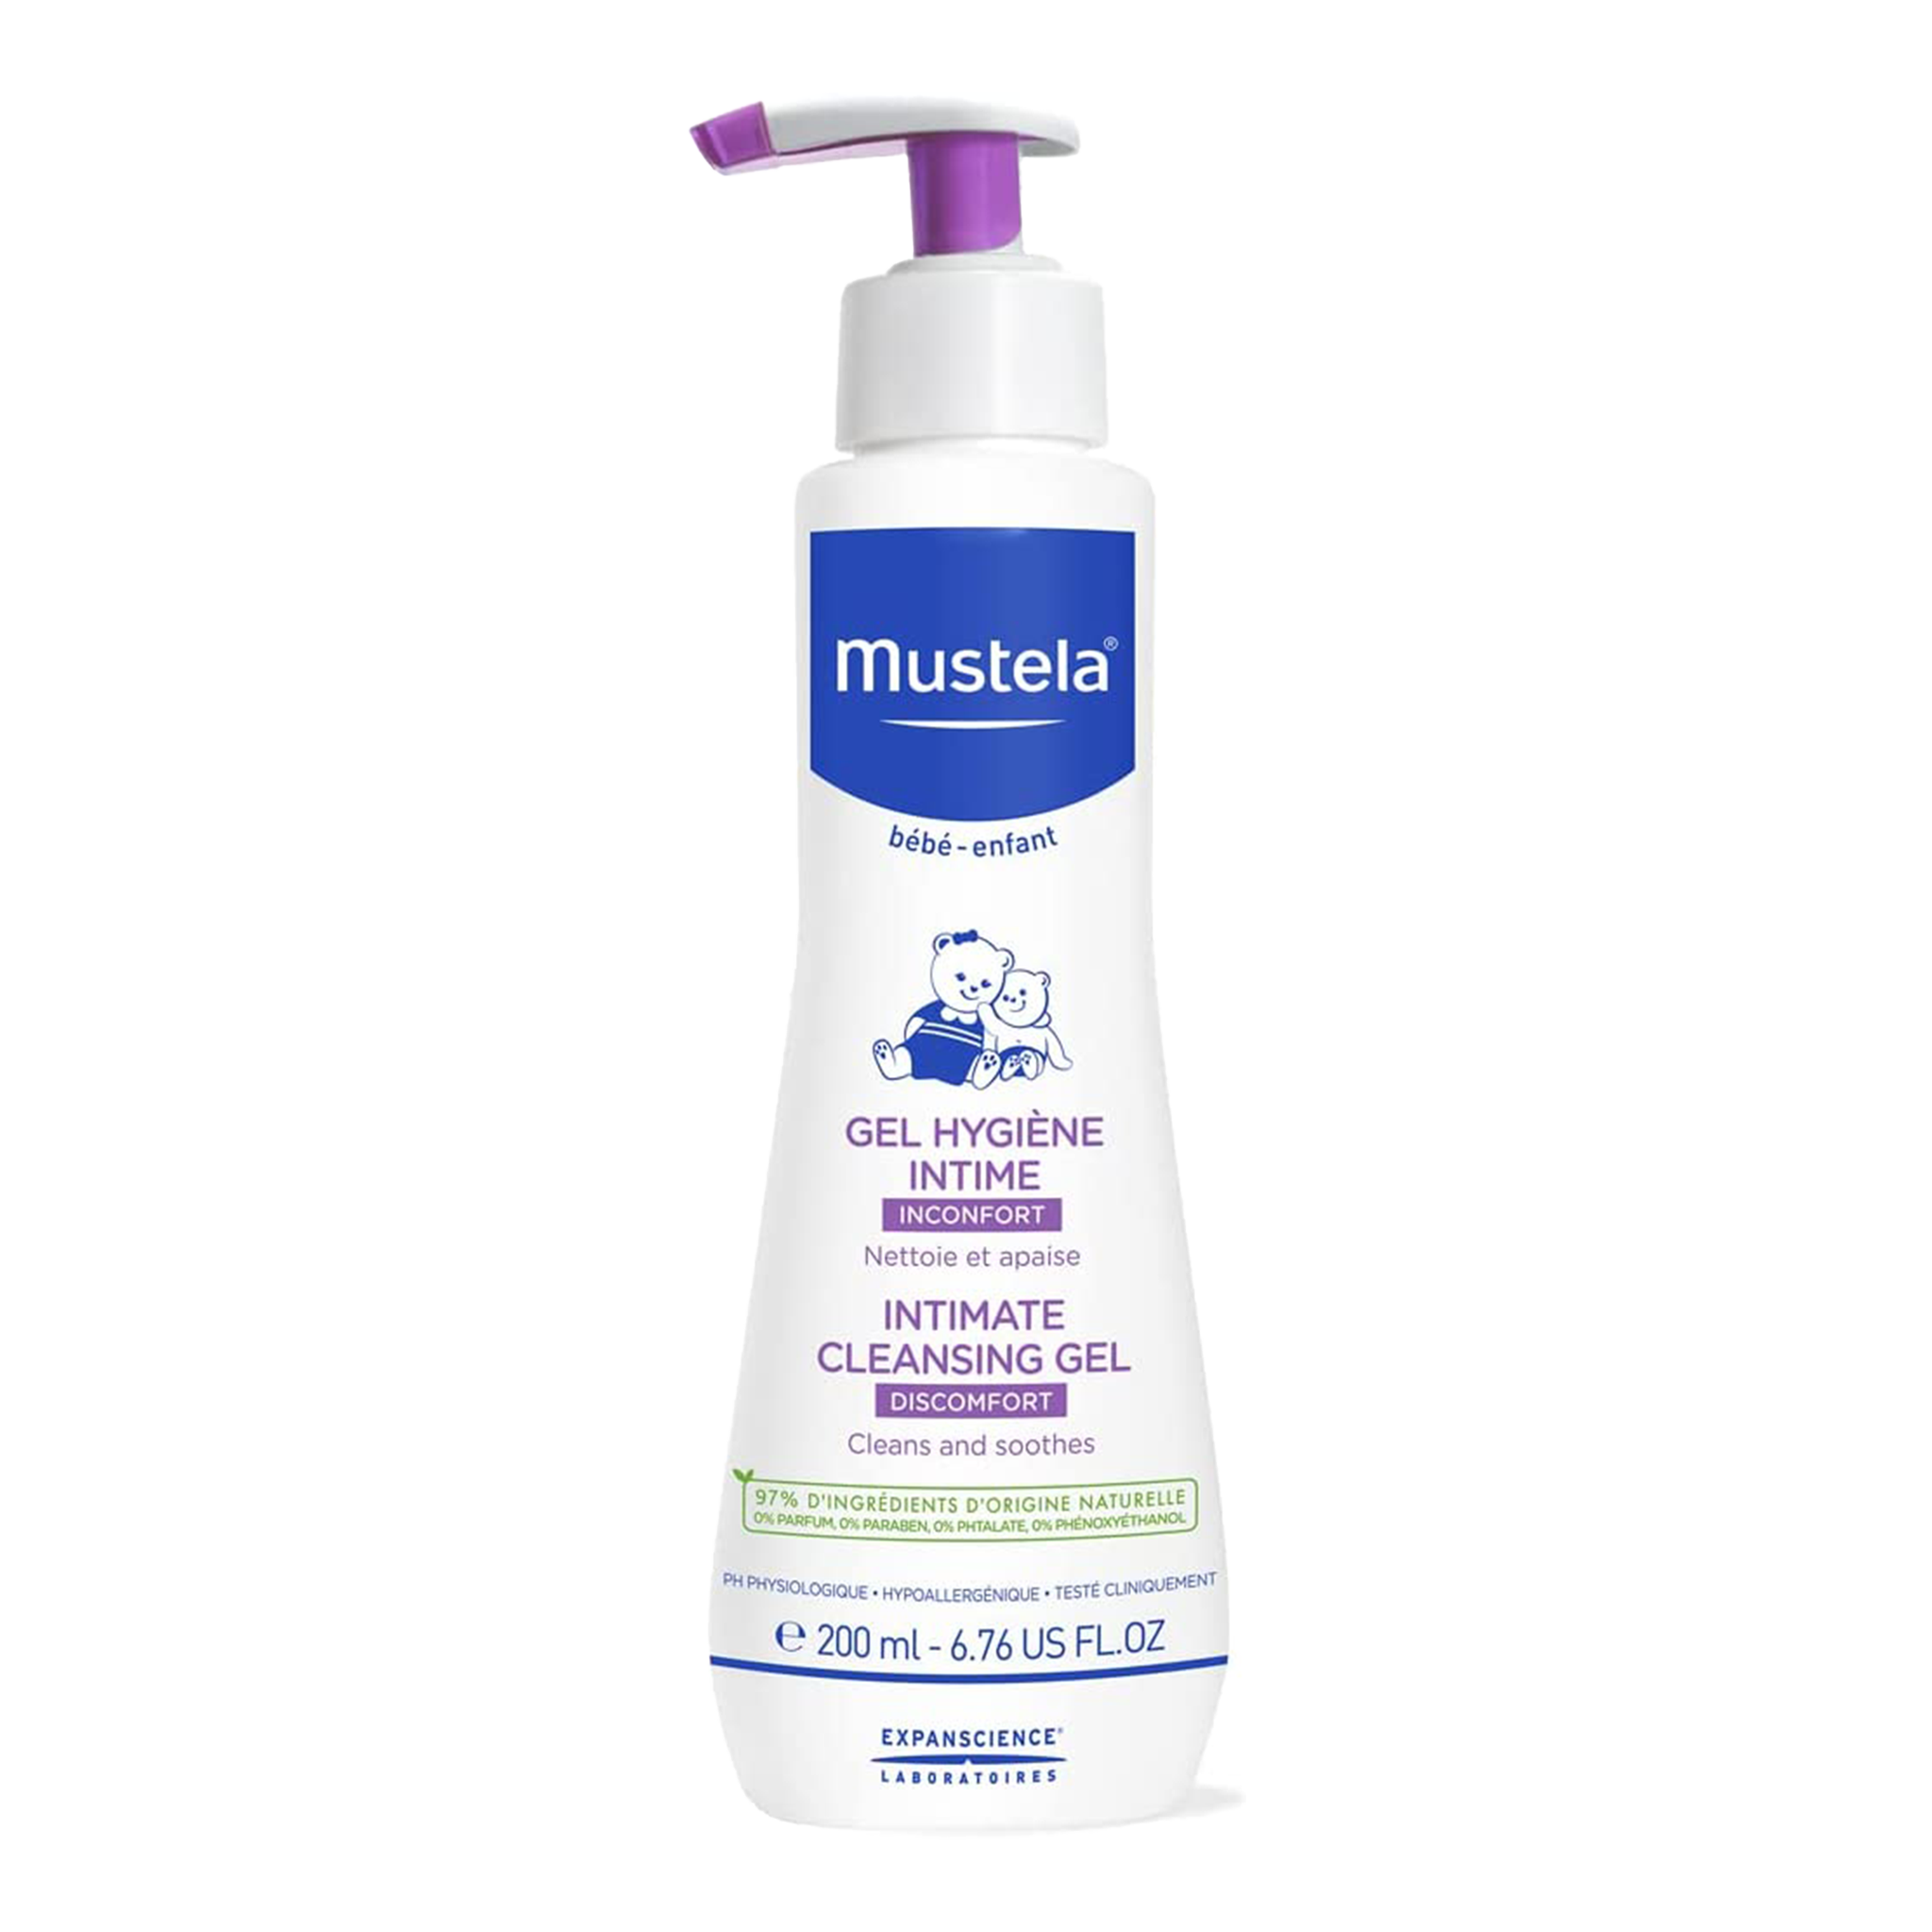 Mustela - Intimate Cleansing Gel 200ml